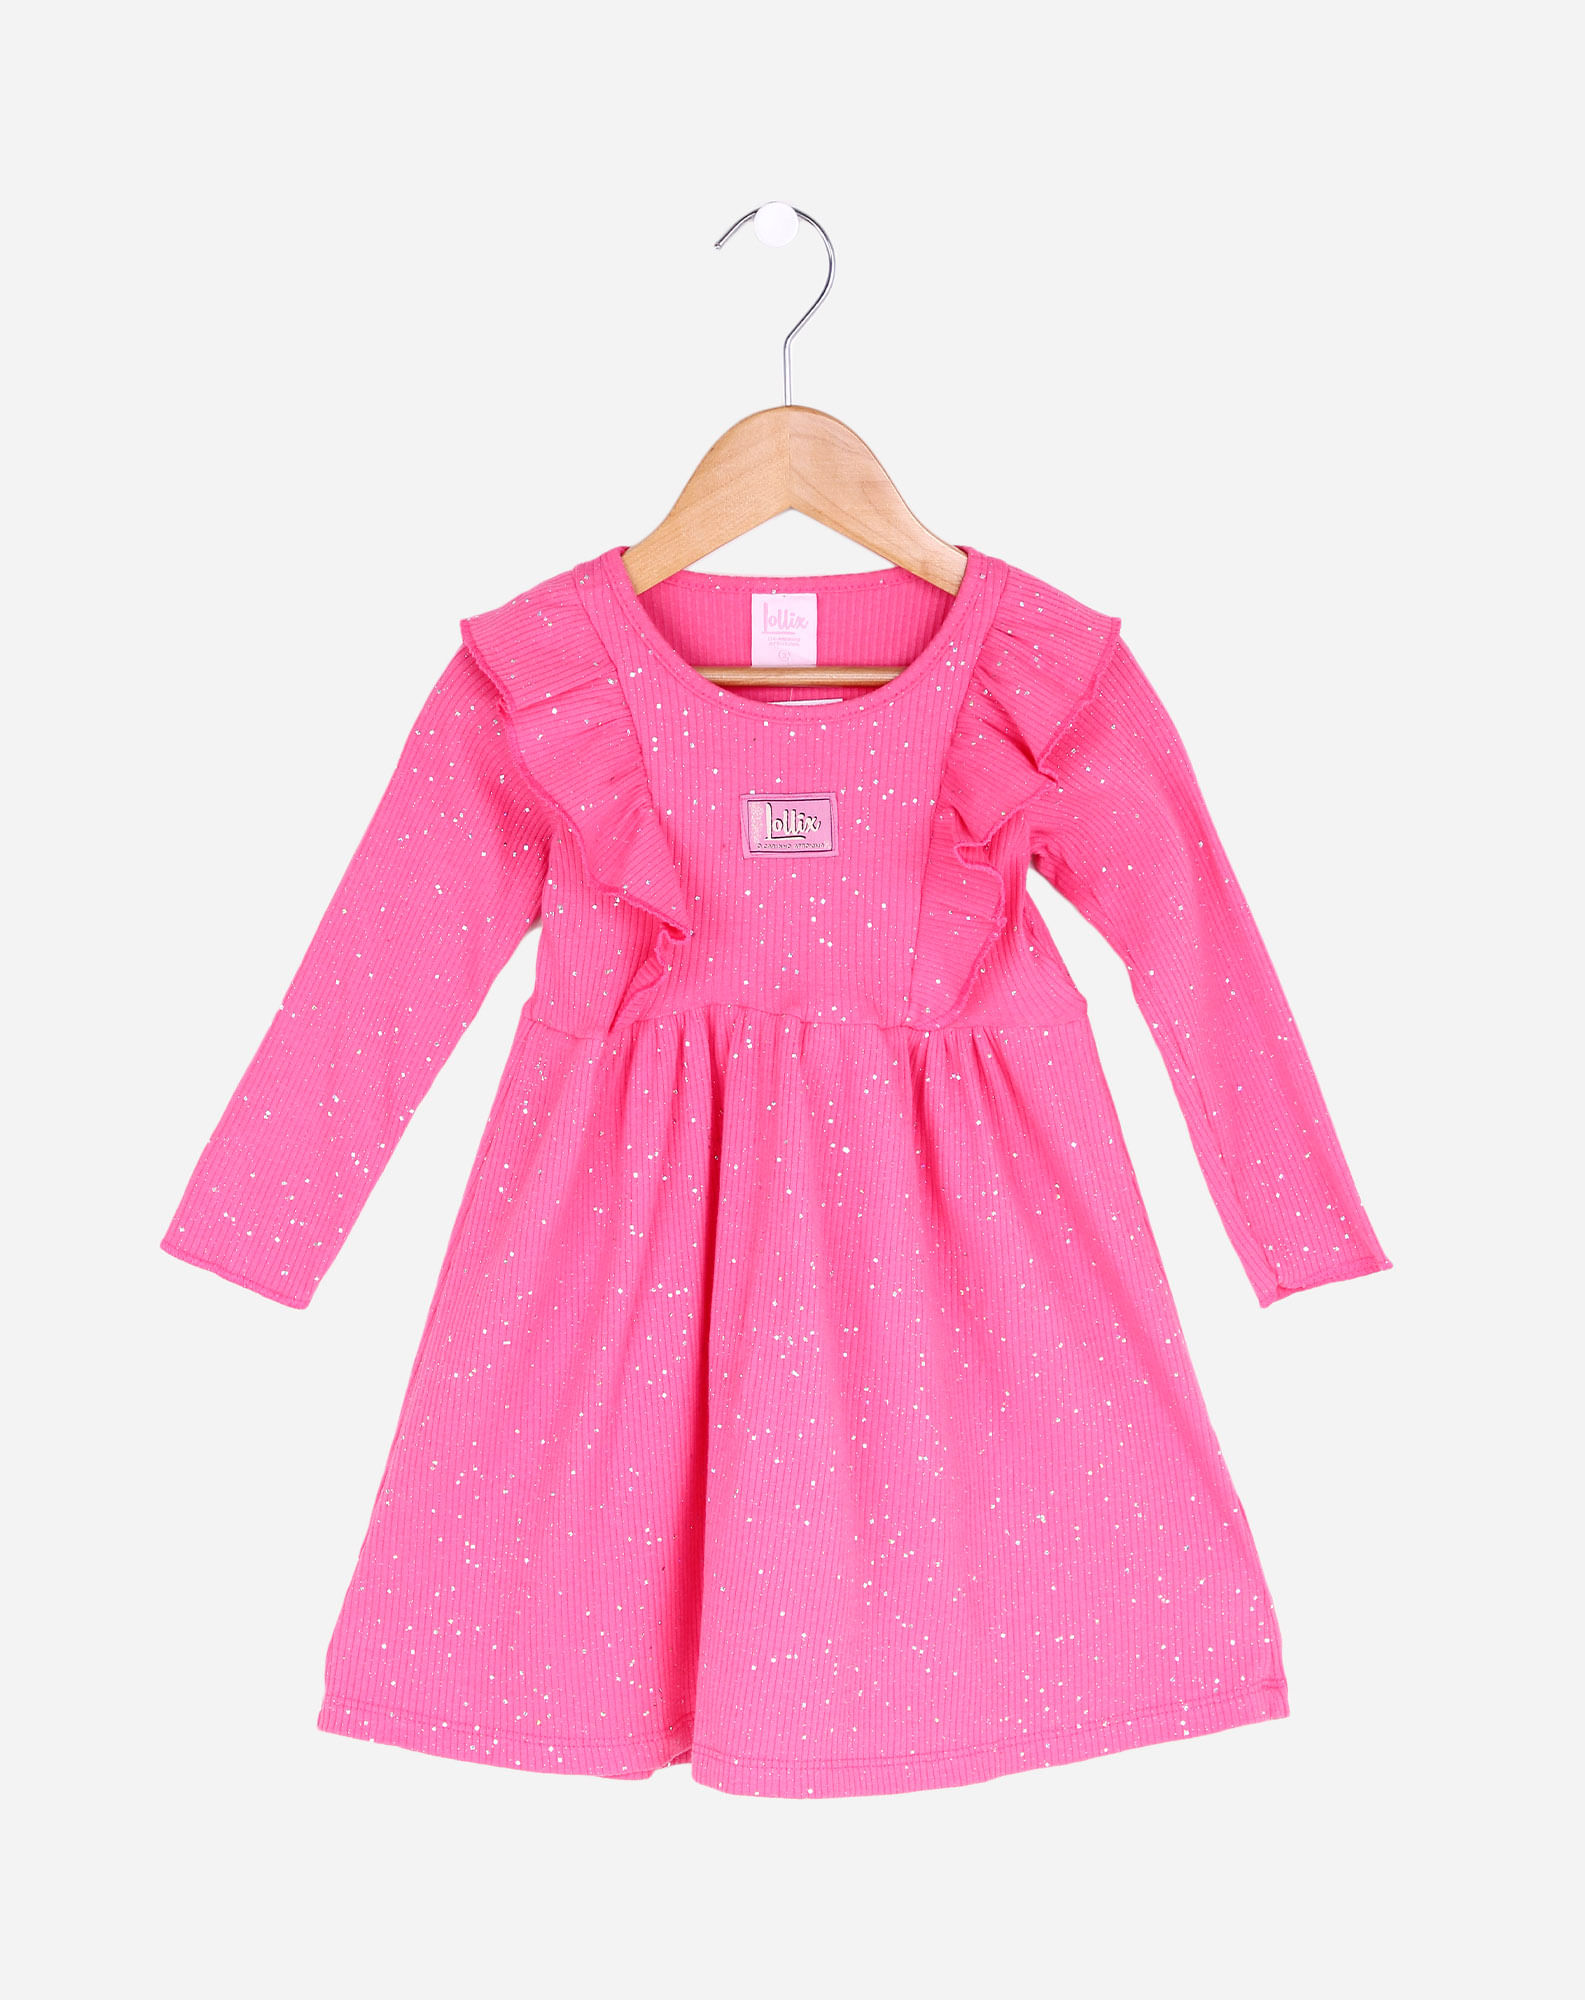 700534001 vestido manga longa infantil menina babados - tam. 1 à 3 anos pink 1 e9a